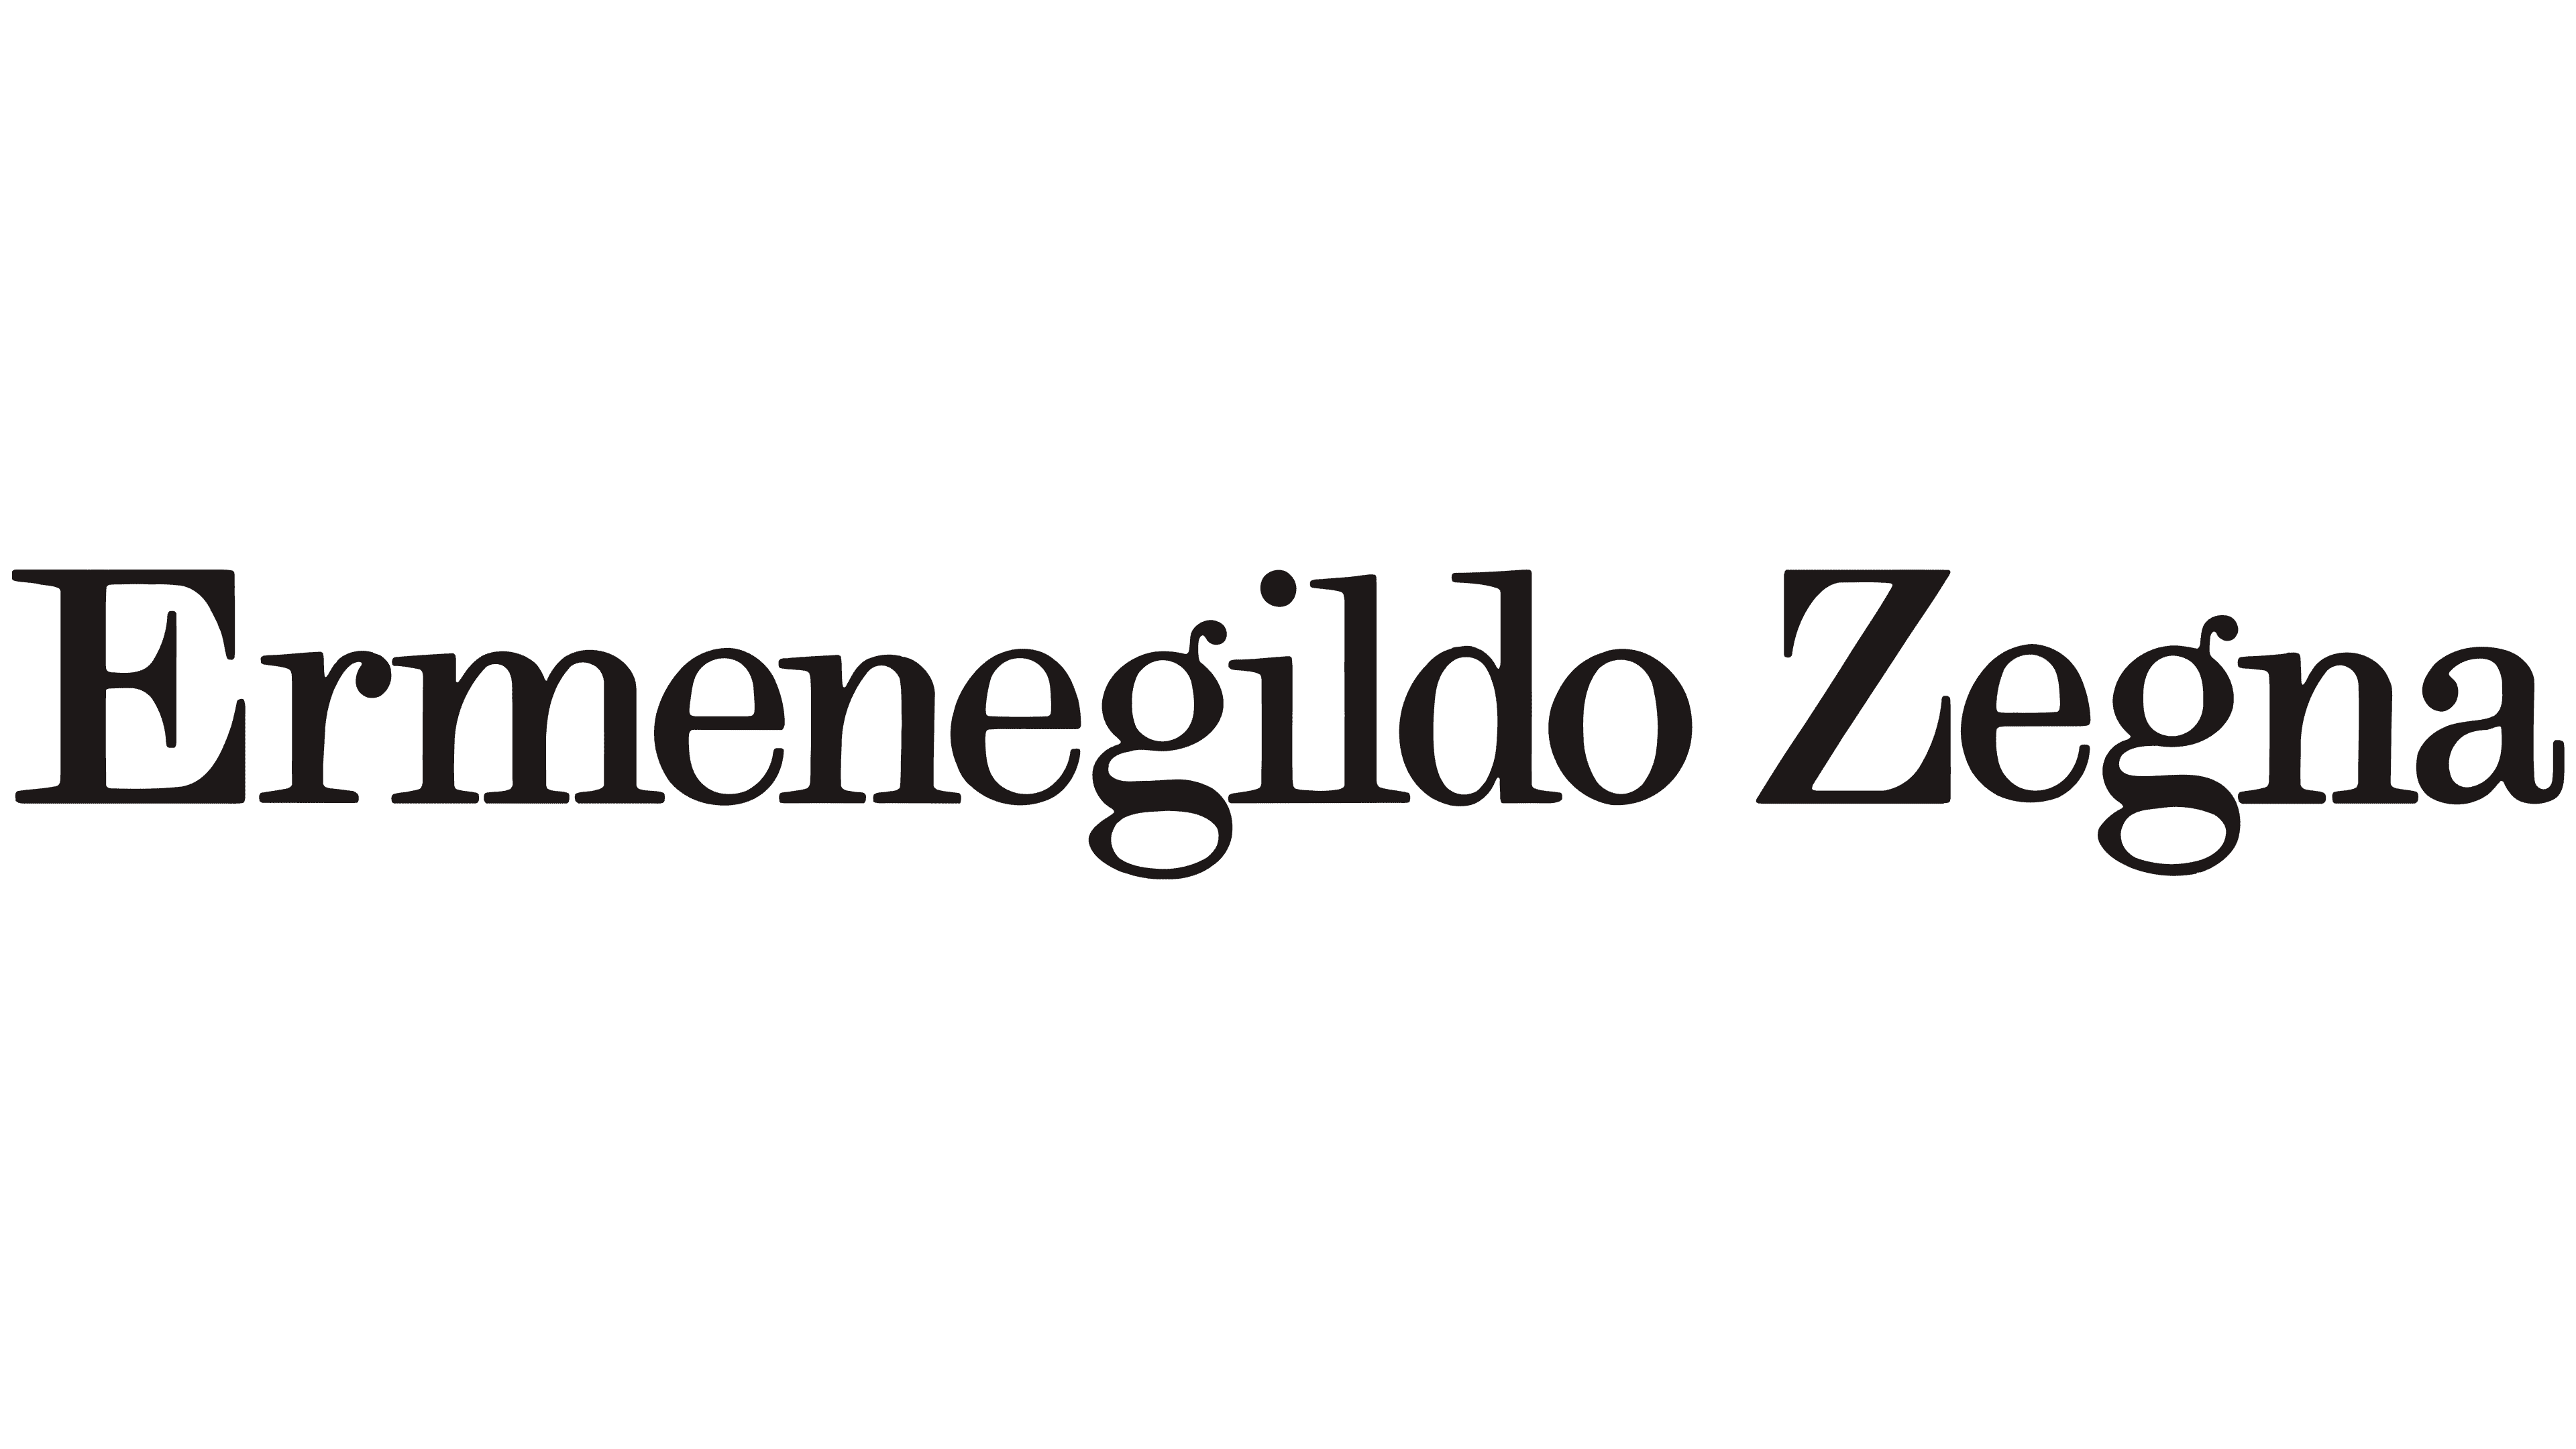 Ermenegildo Zegna Logo In Transparent Png And Vectori - vrogue.co